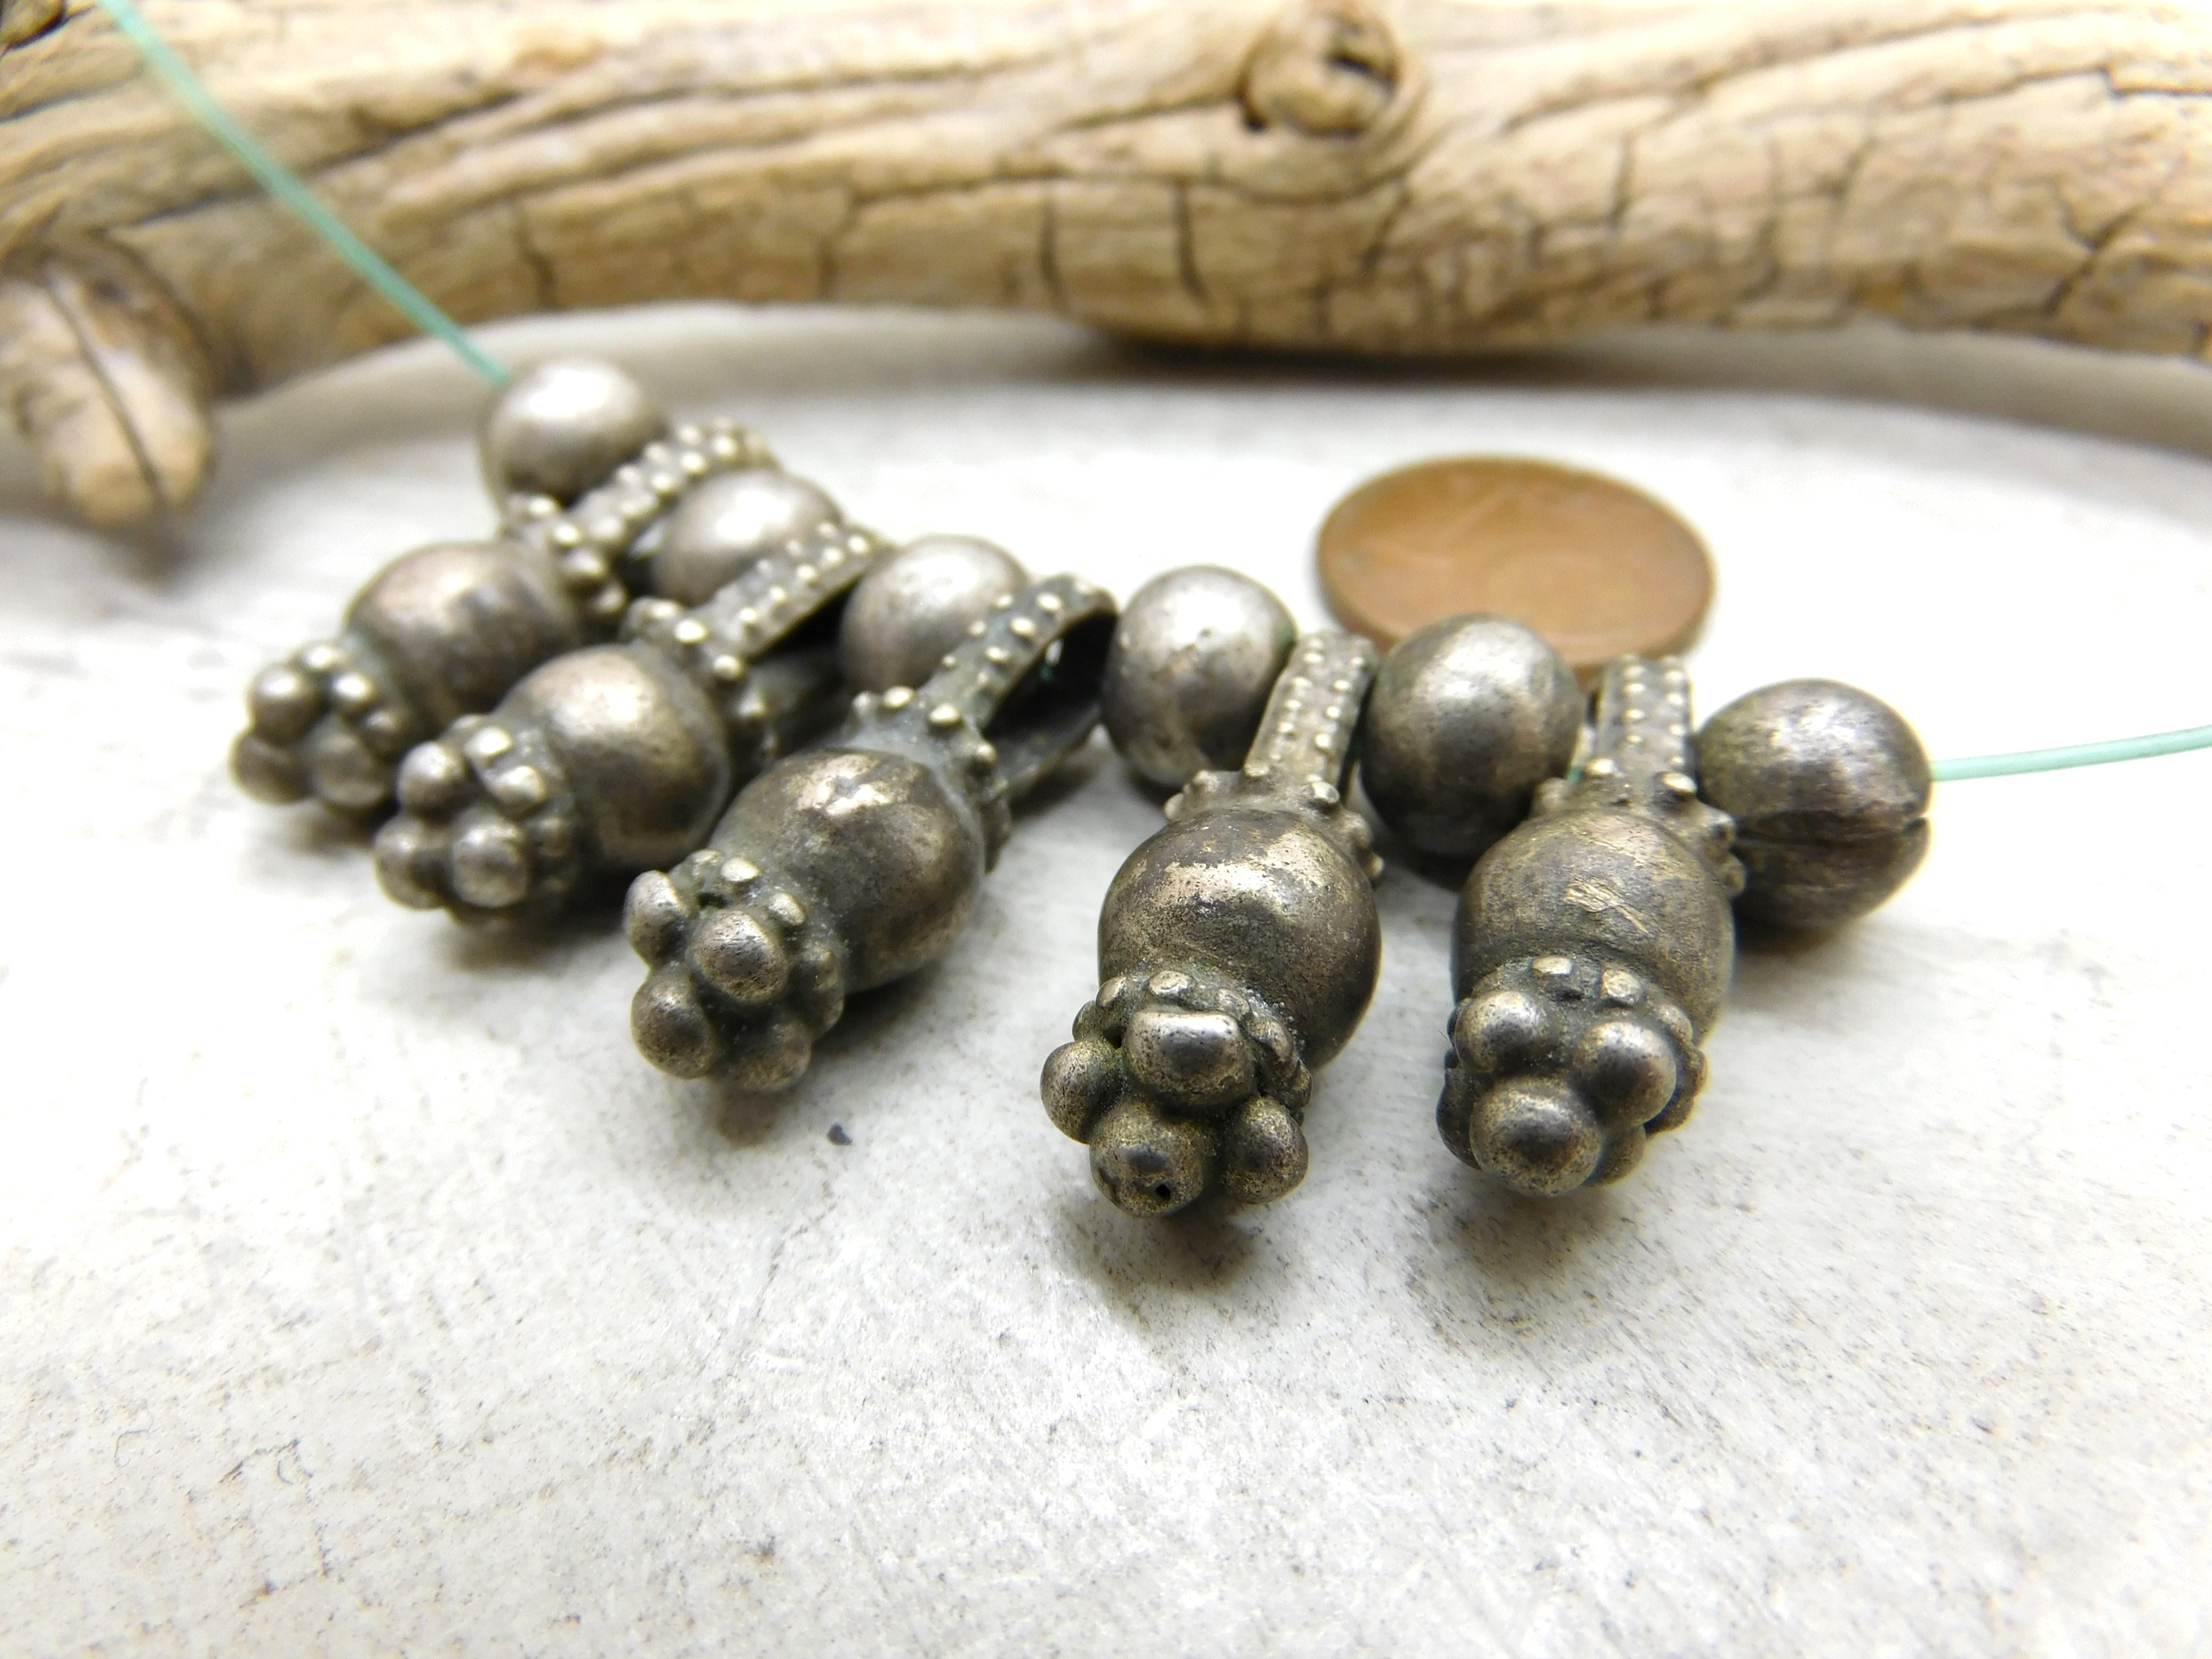 Yemeni silver bead beads and pendants set